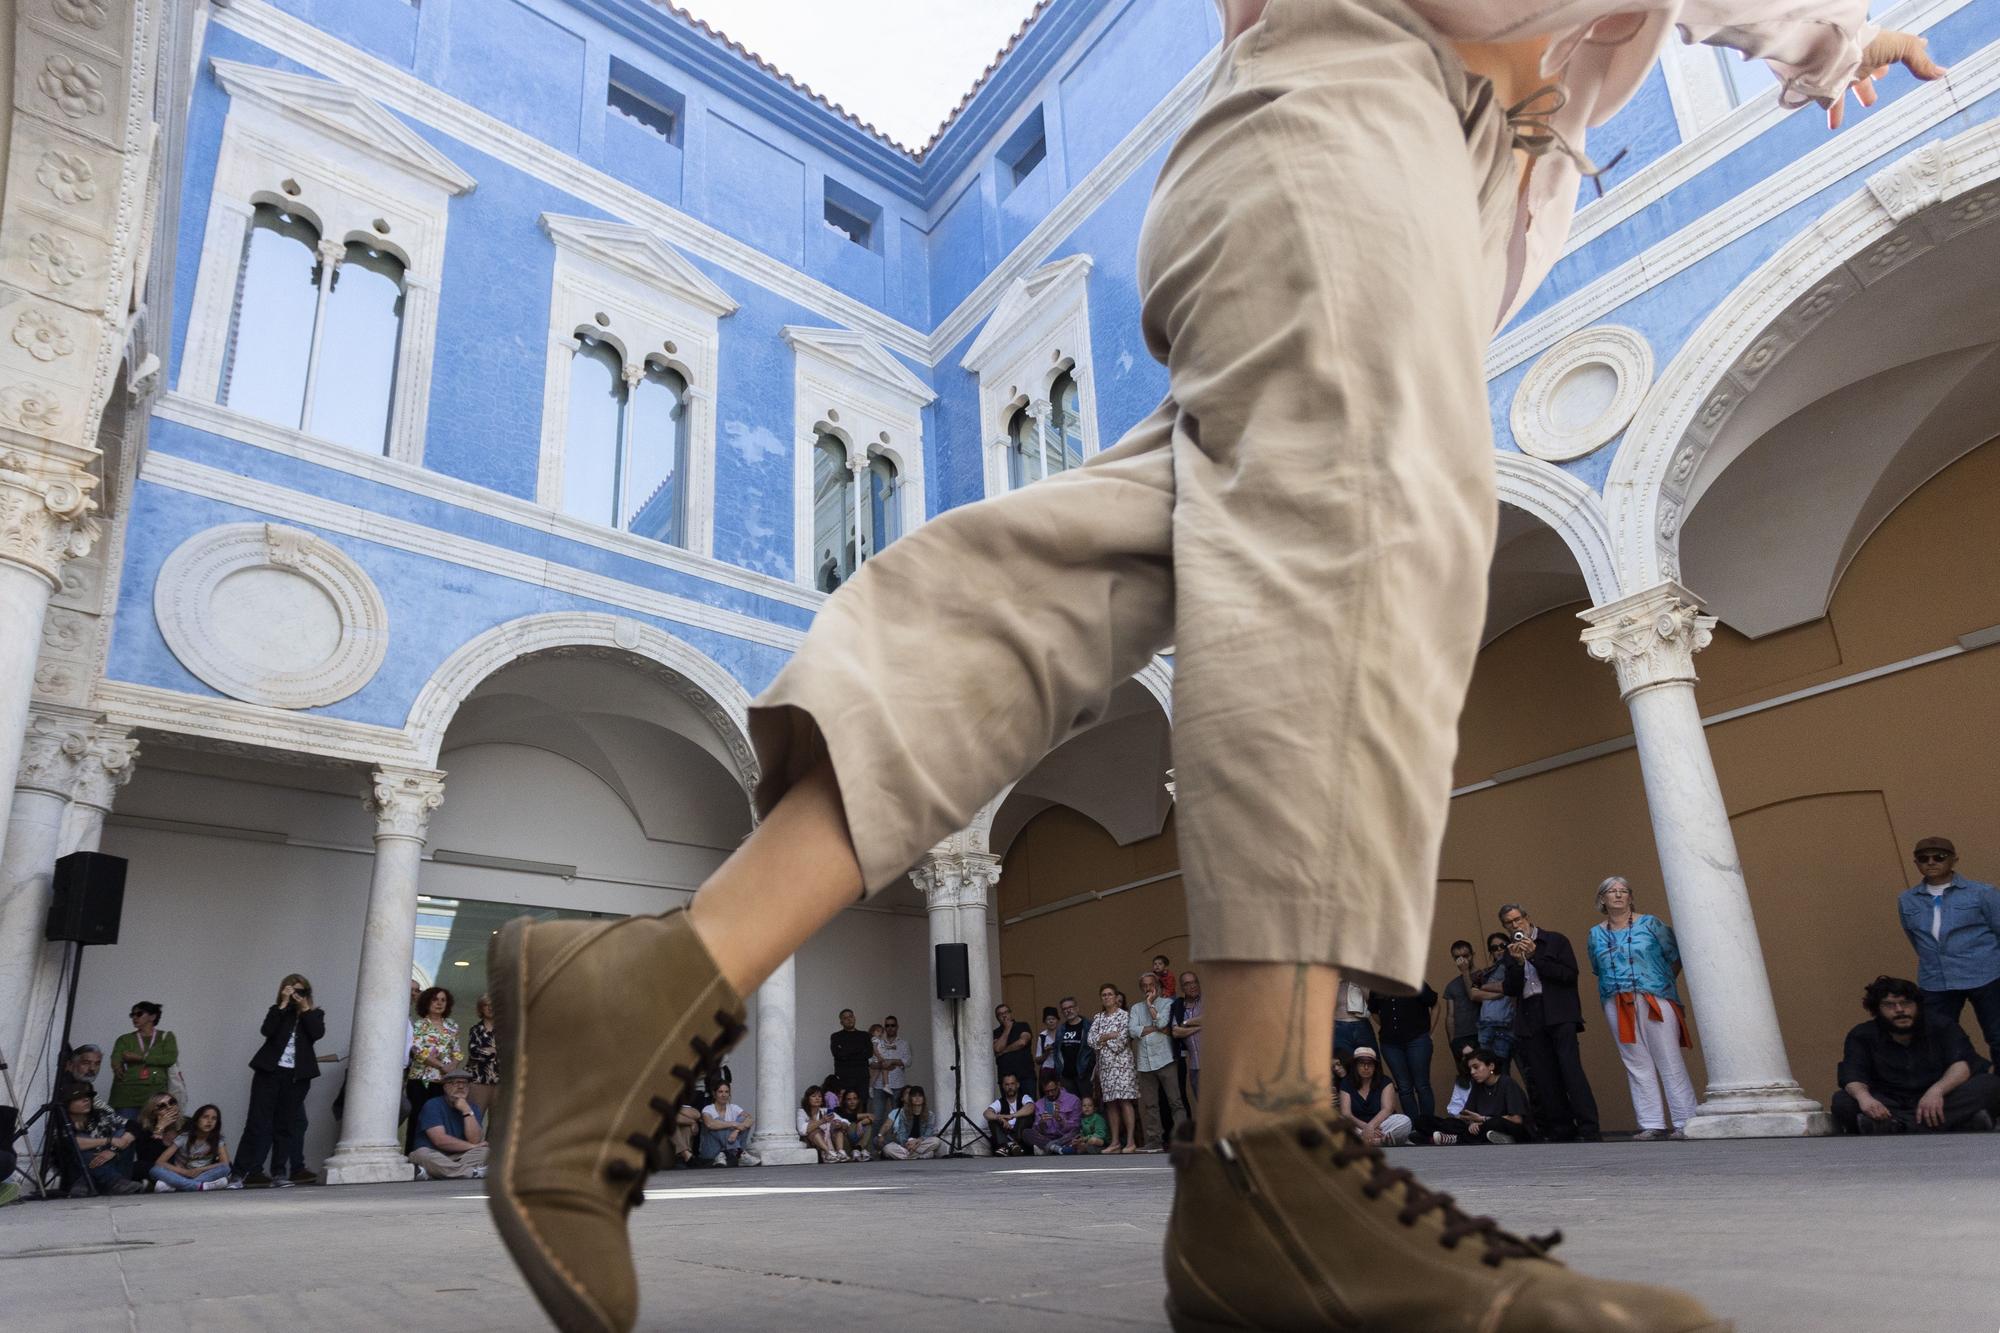 Dansa València lleva el baile a algunos rincones de la ciudad